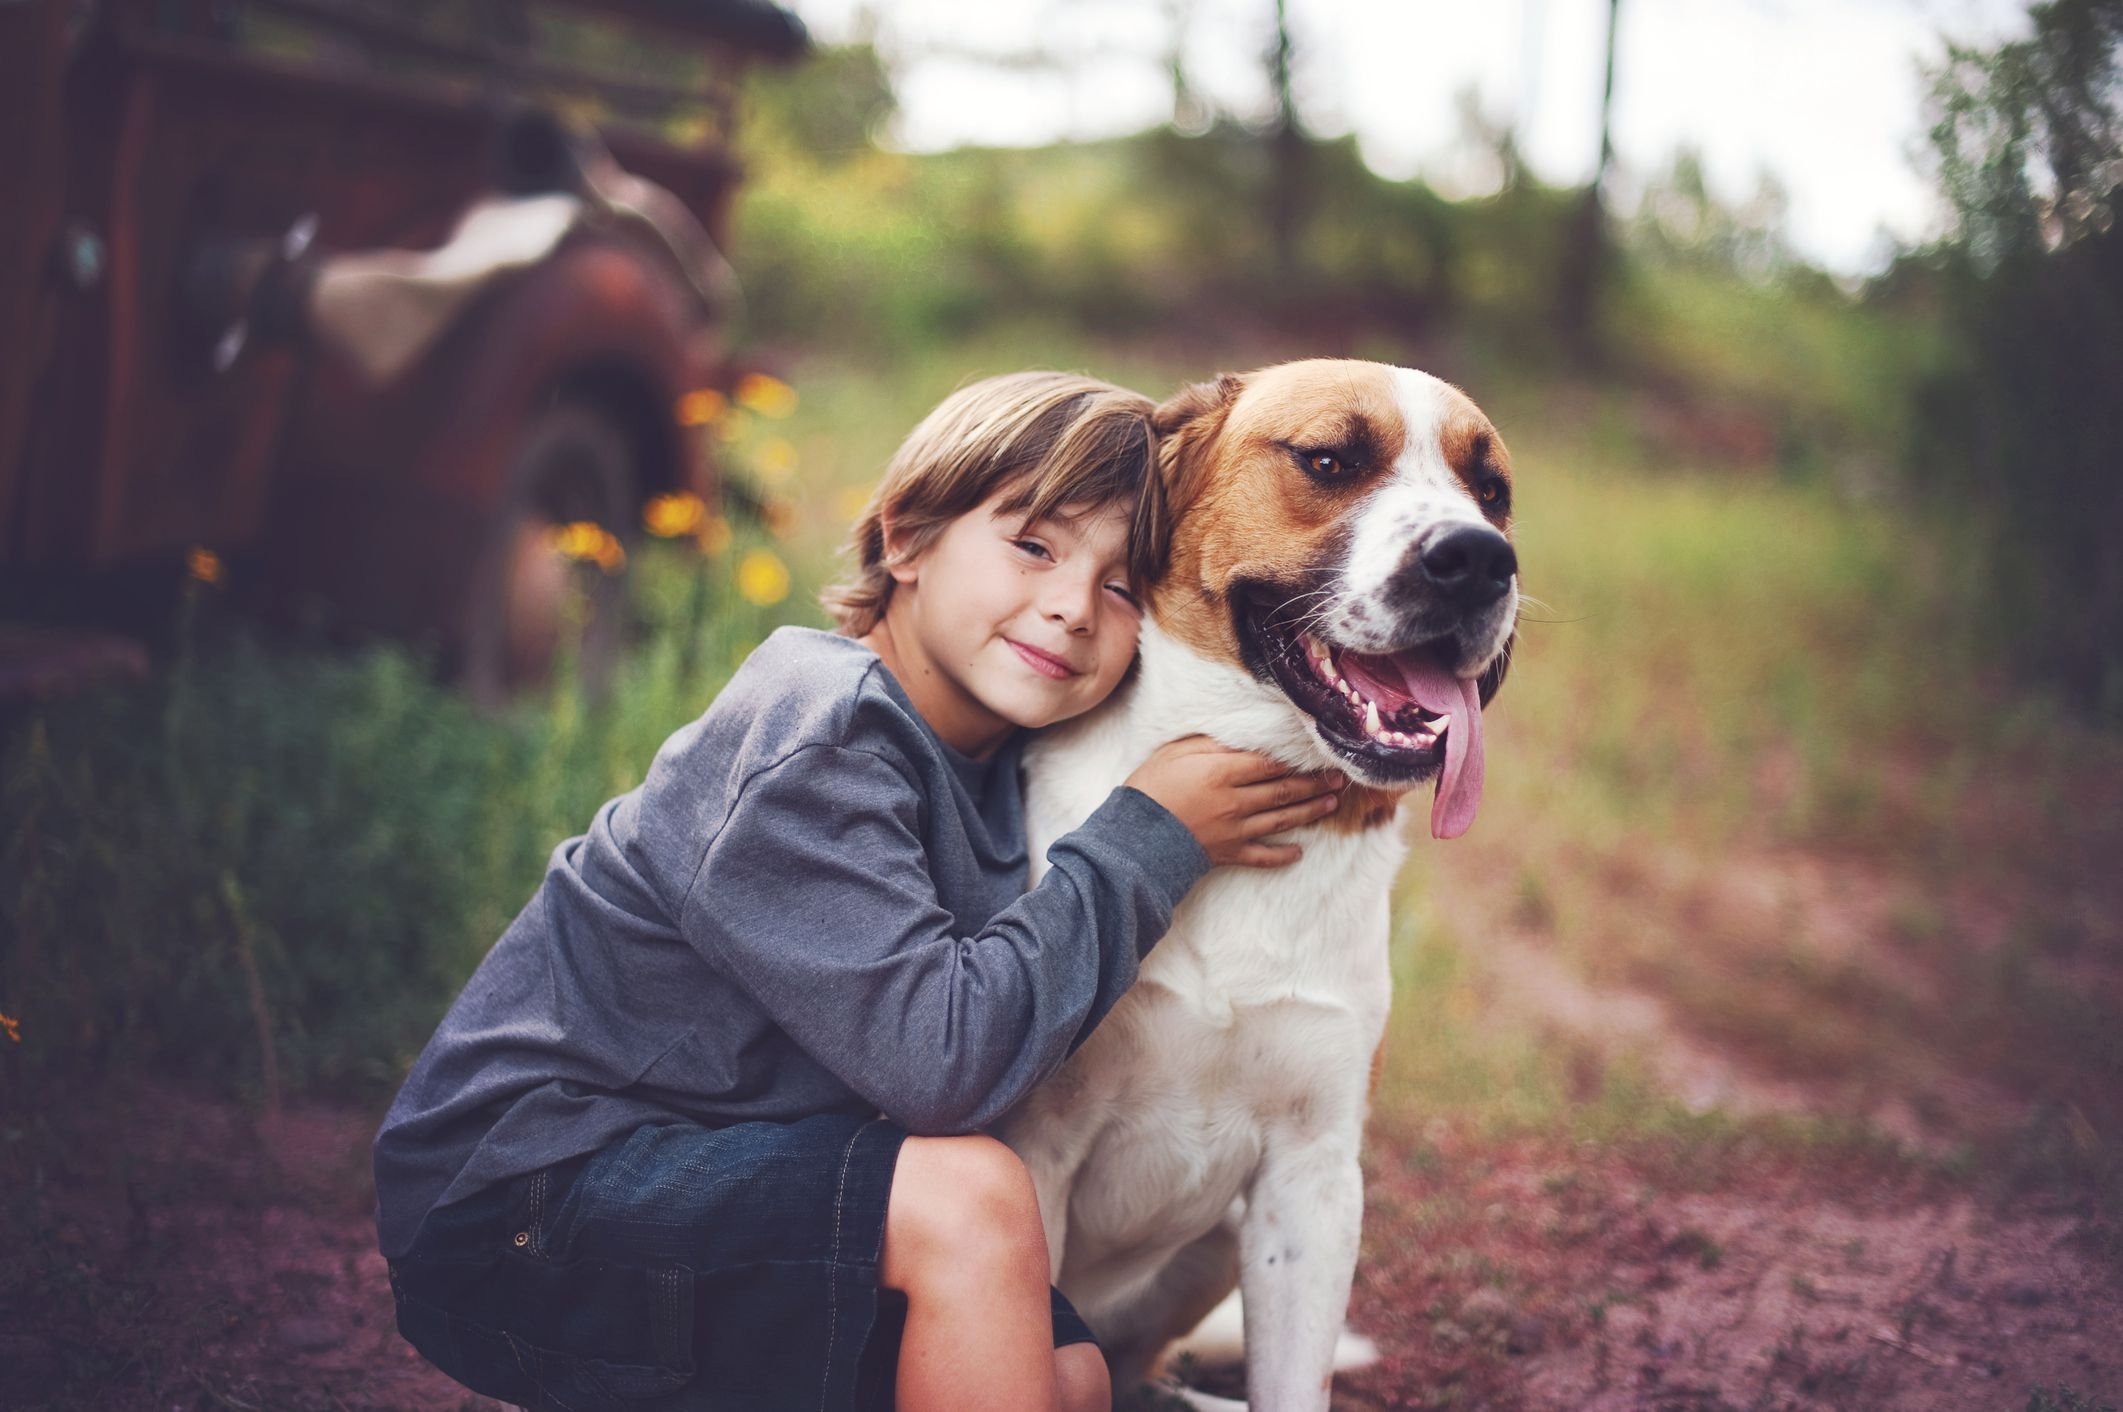 Kind pets. Обнимает собаку. Ребенок обнимает собаку. Мальчик с собакой. Собака для детей.